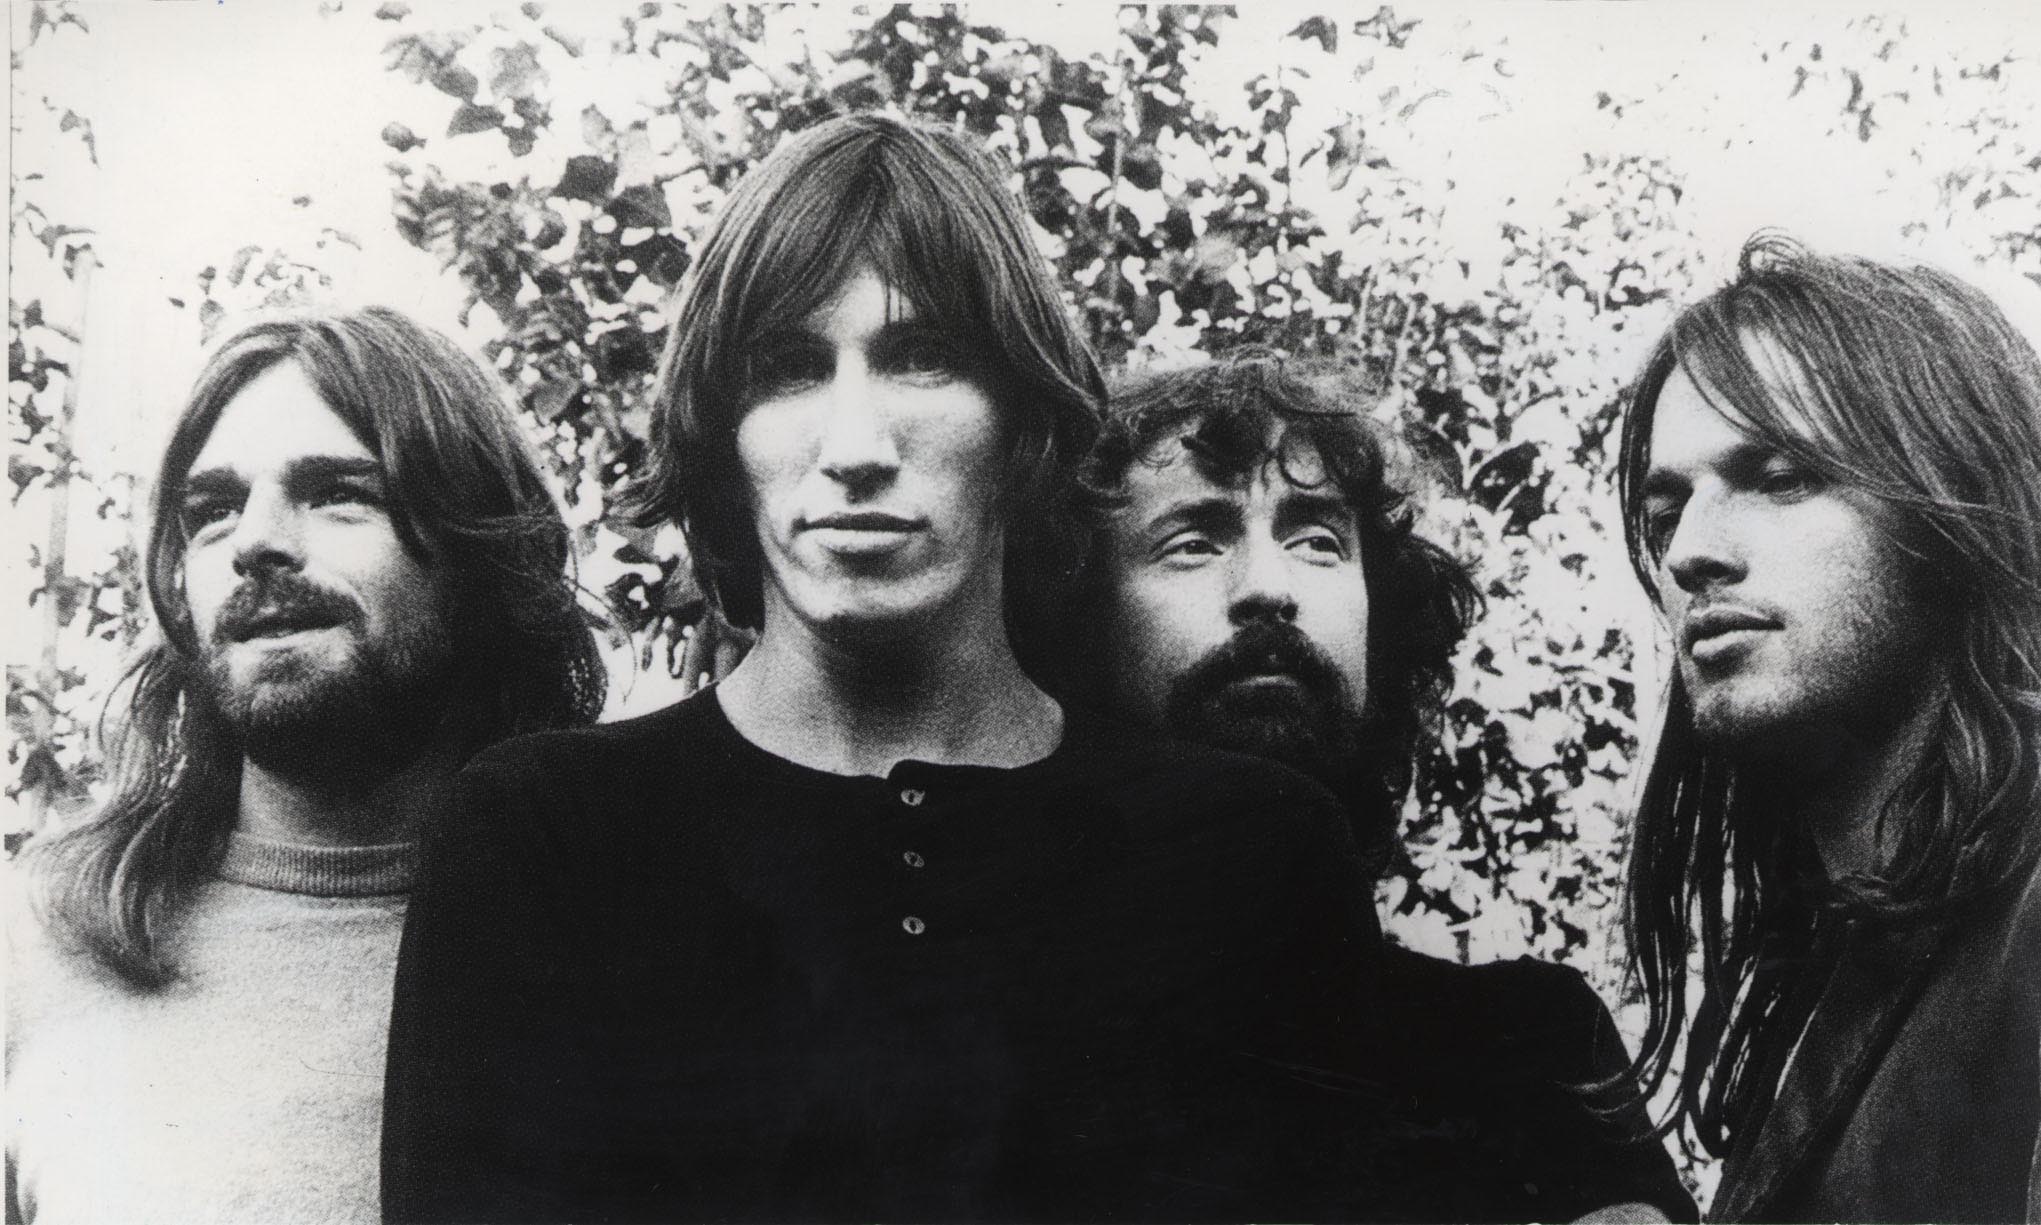 História e tradução de Wish you were here (Pink Floyd) - Cultura